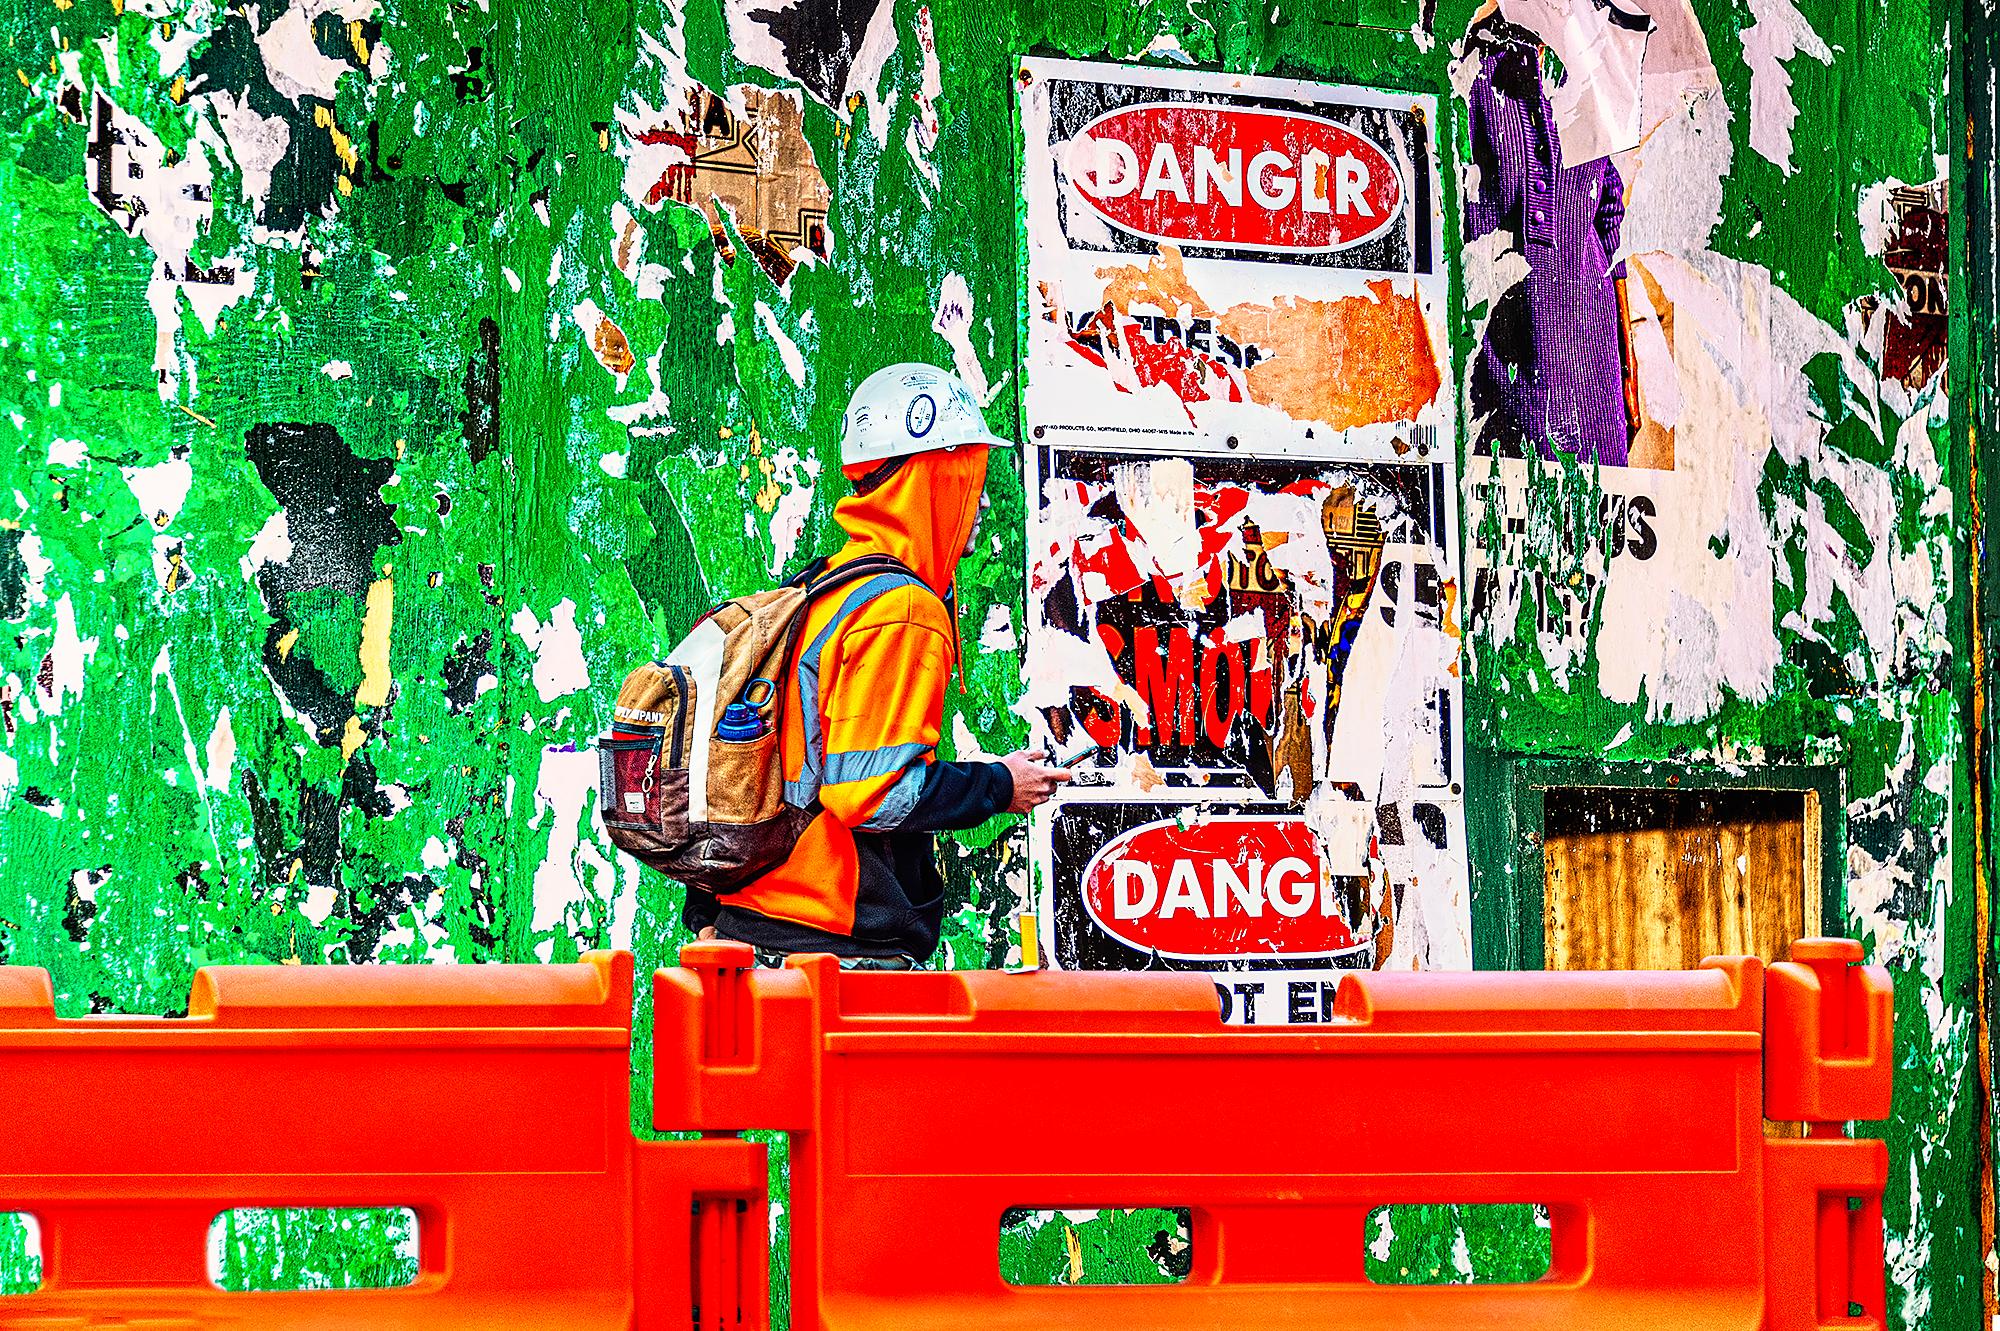 Landscape Photograph Mitchell Funk - Photographie d'art de rue graffiti  rouge et vert